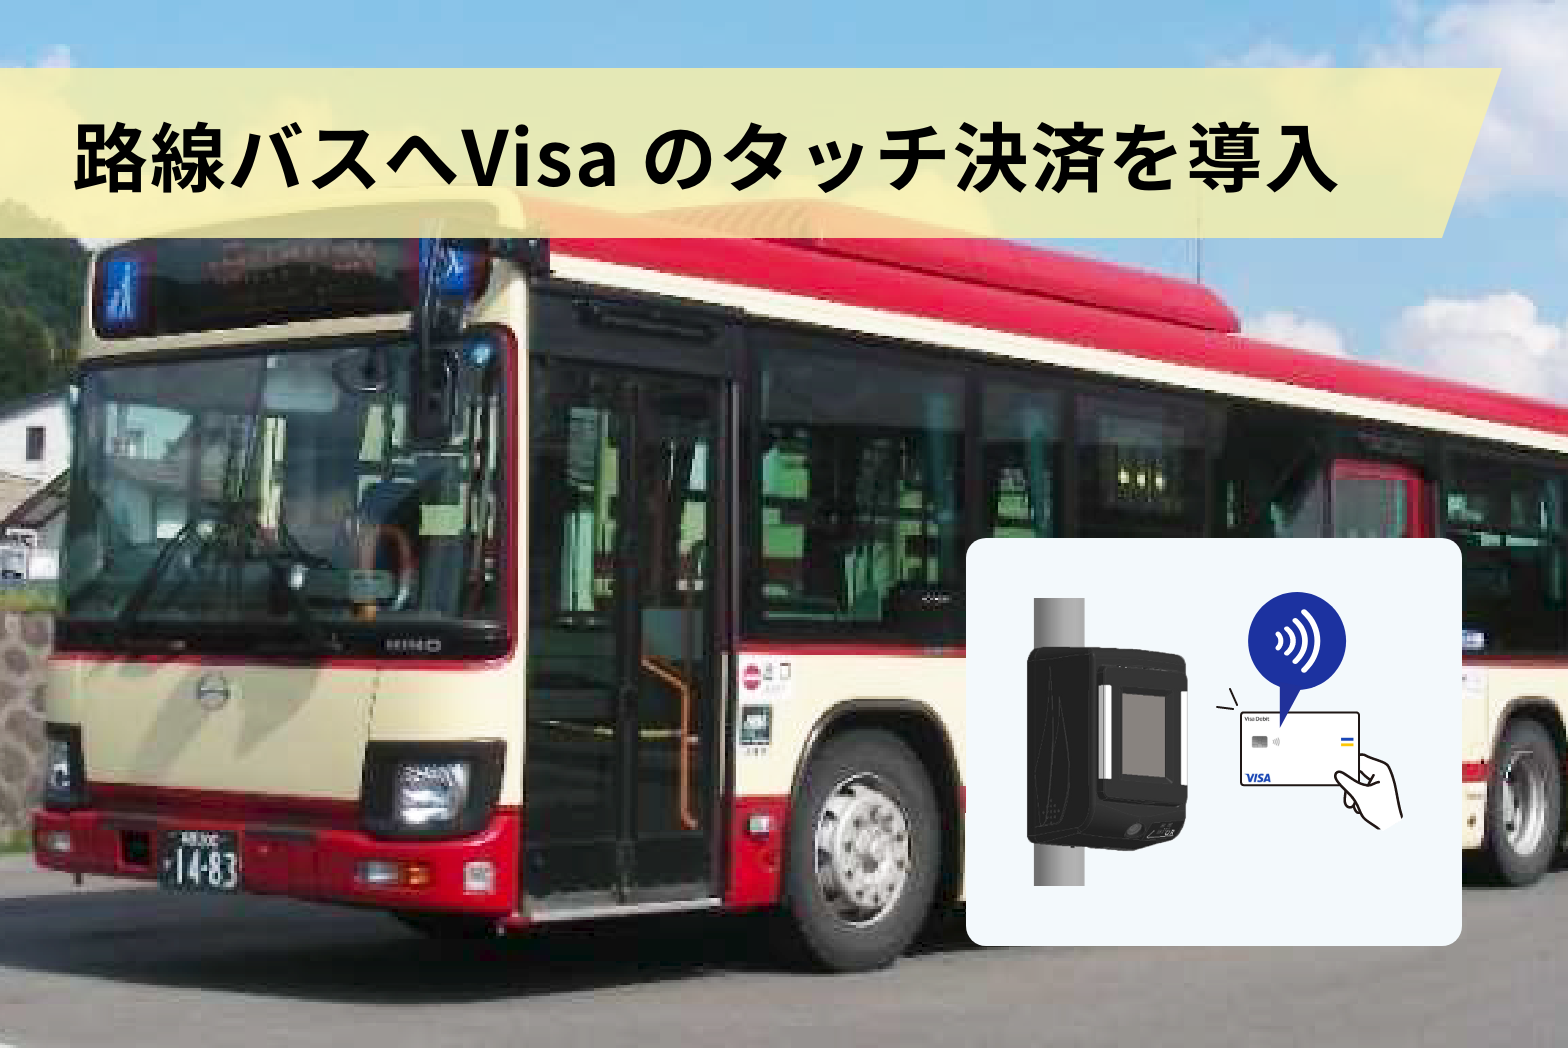 長電バス株式会社、路線バスへVisa のタッチ決済を導入